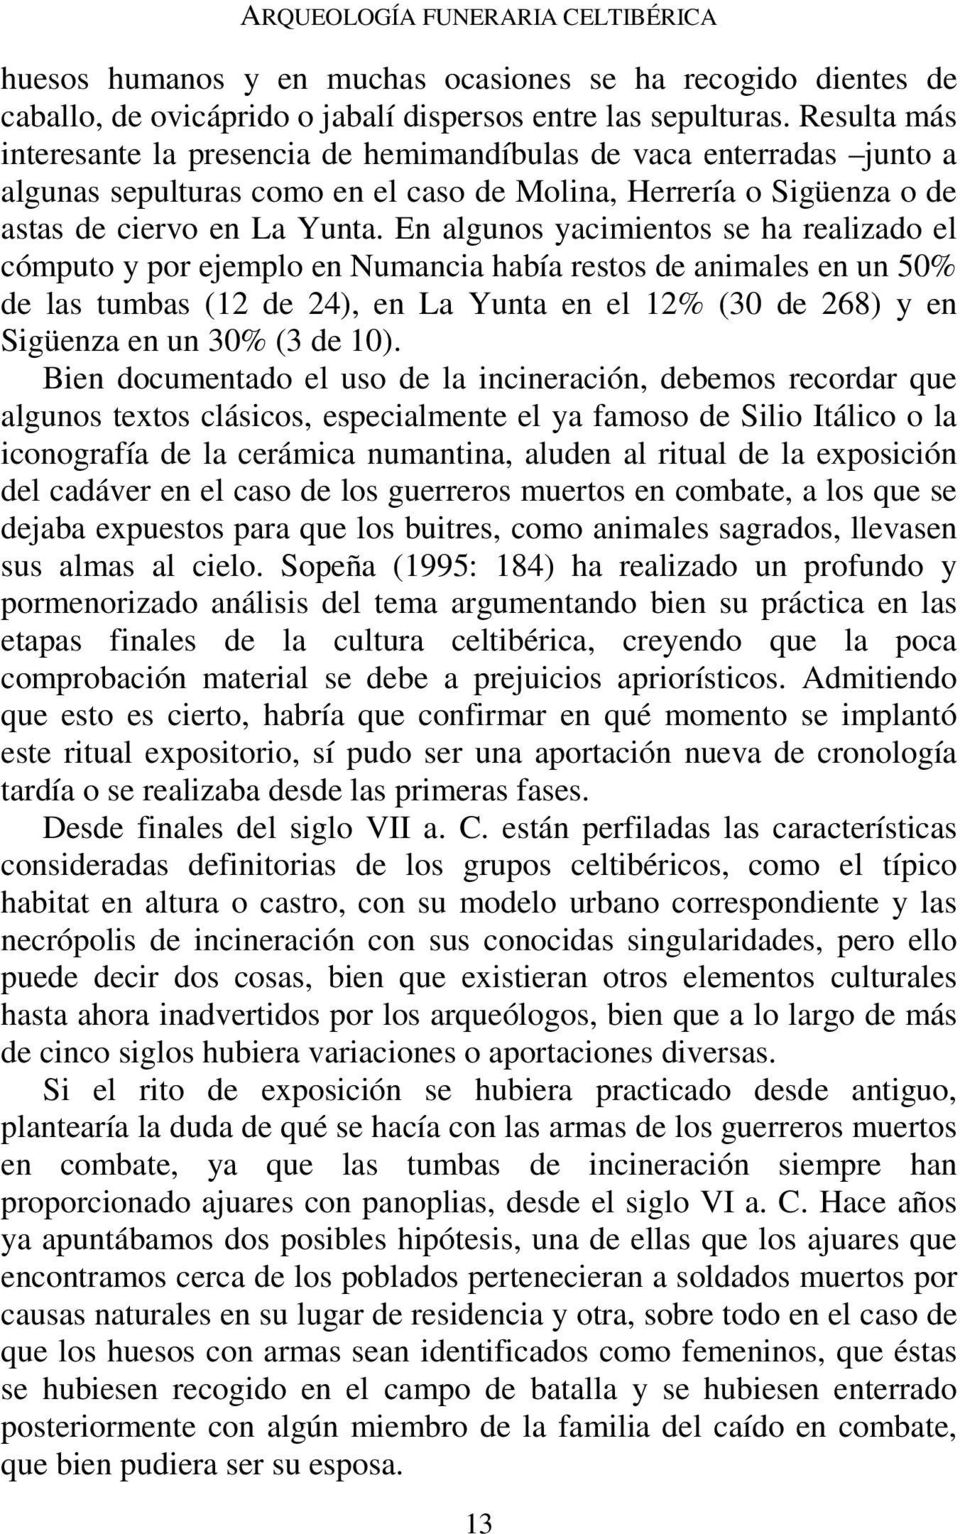 En algunos yacimientos se ha realizado el cómputo y por ejemplo en Numancia había restos de animales en un 50% de las tumbas (12 de 24), en La Yunta en el 12% (30 de 268) y en Sigüenza en un 30% (3